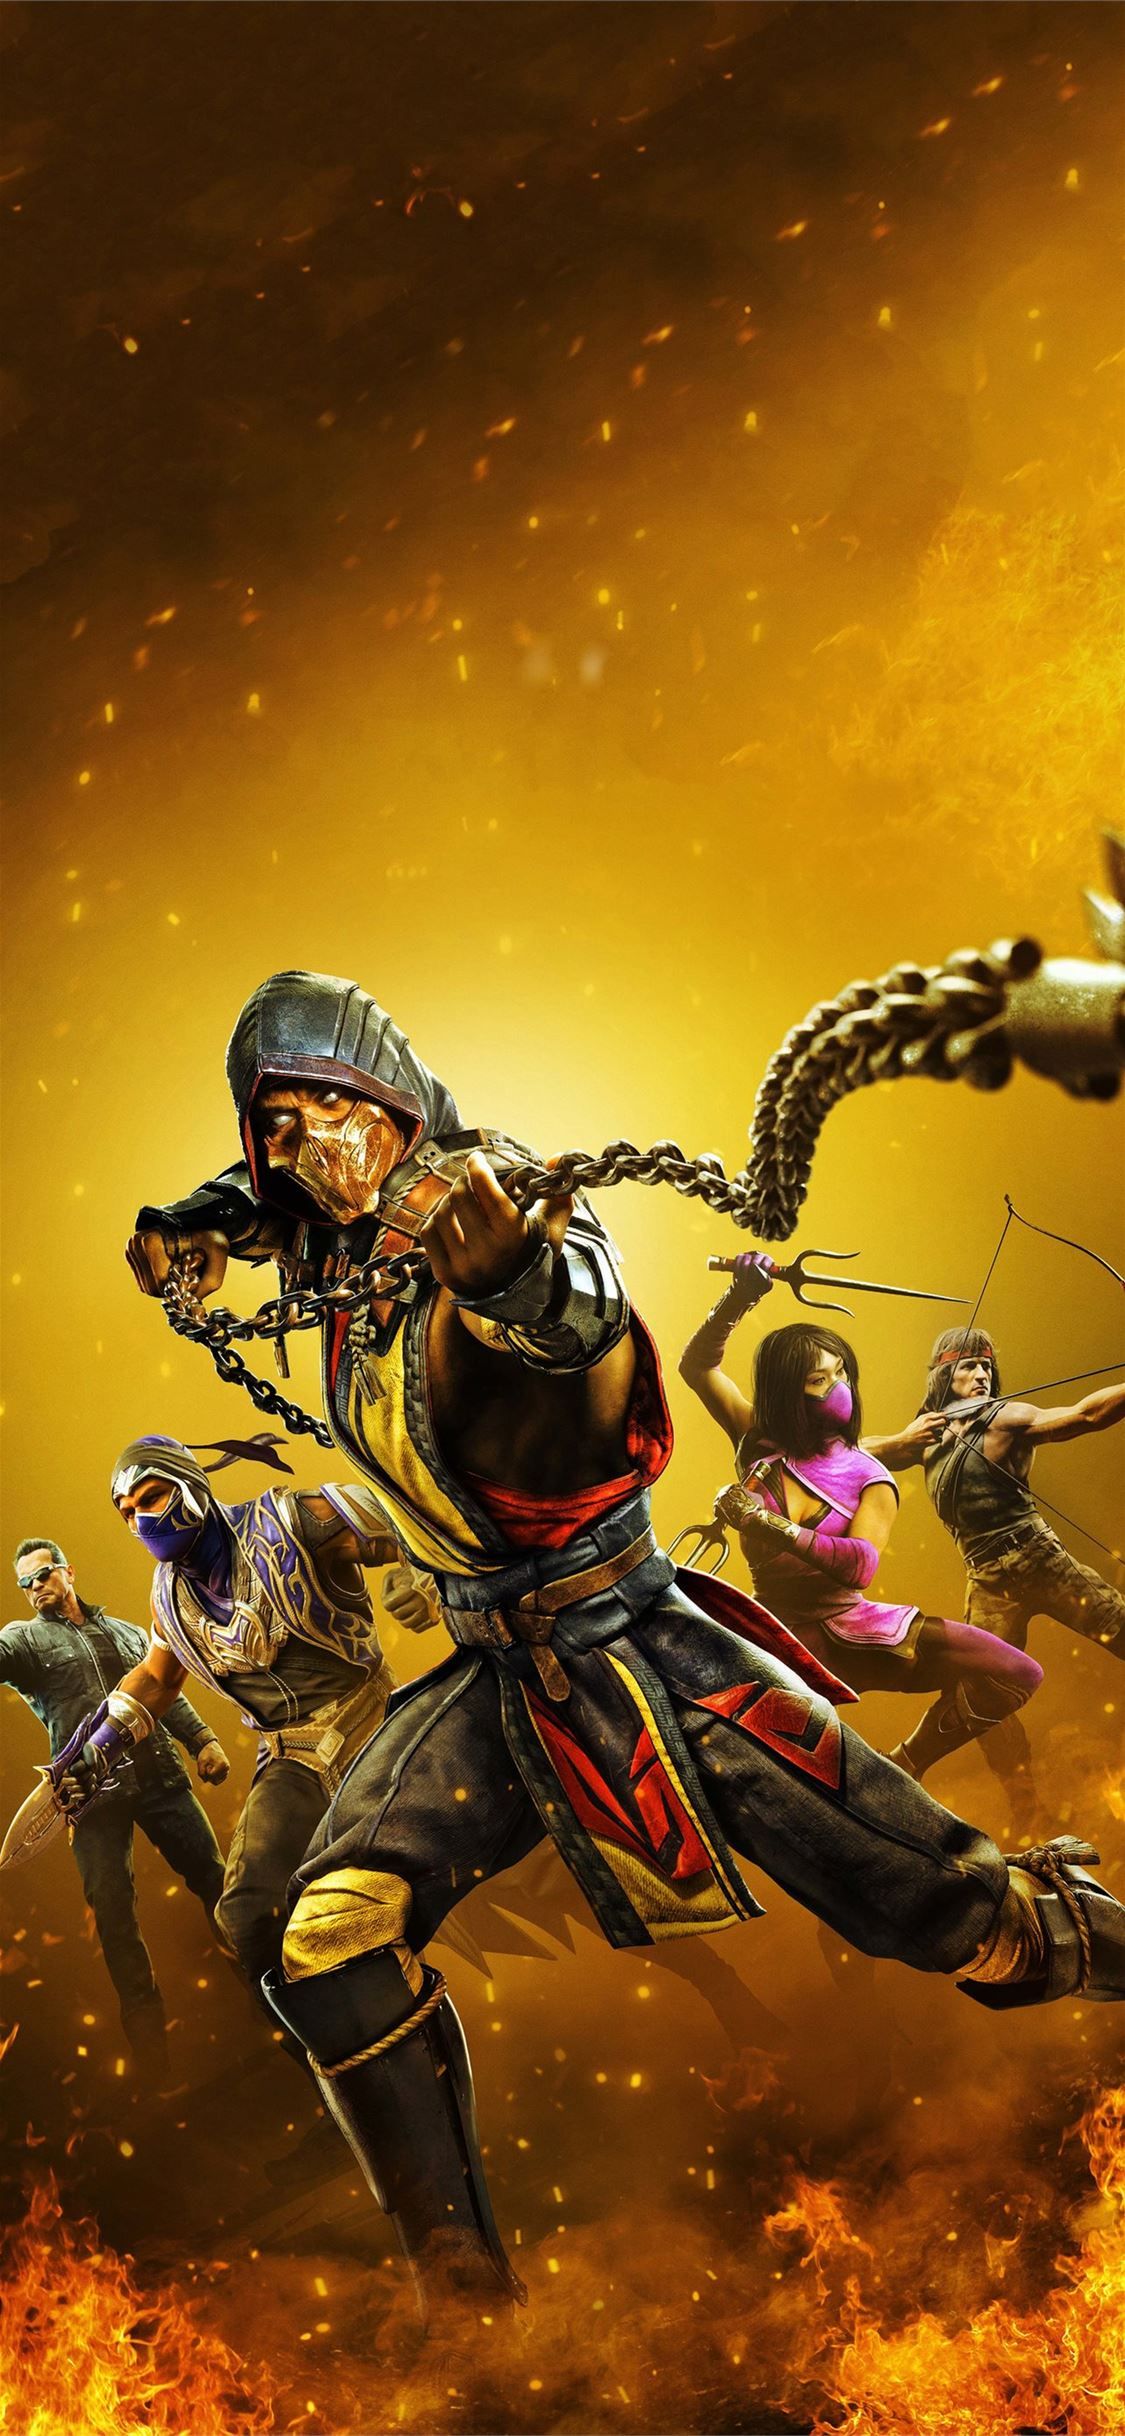 Best Mortal kombat iPhone X Wallpaper HD [2020]